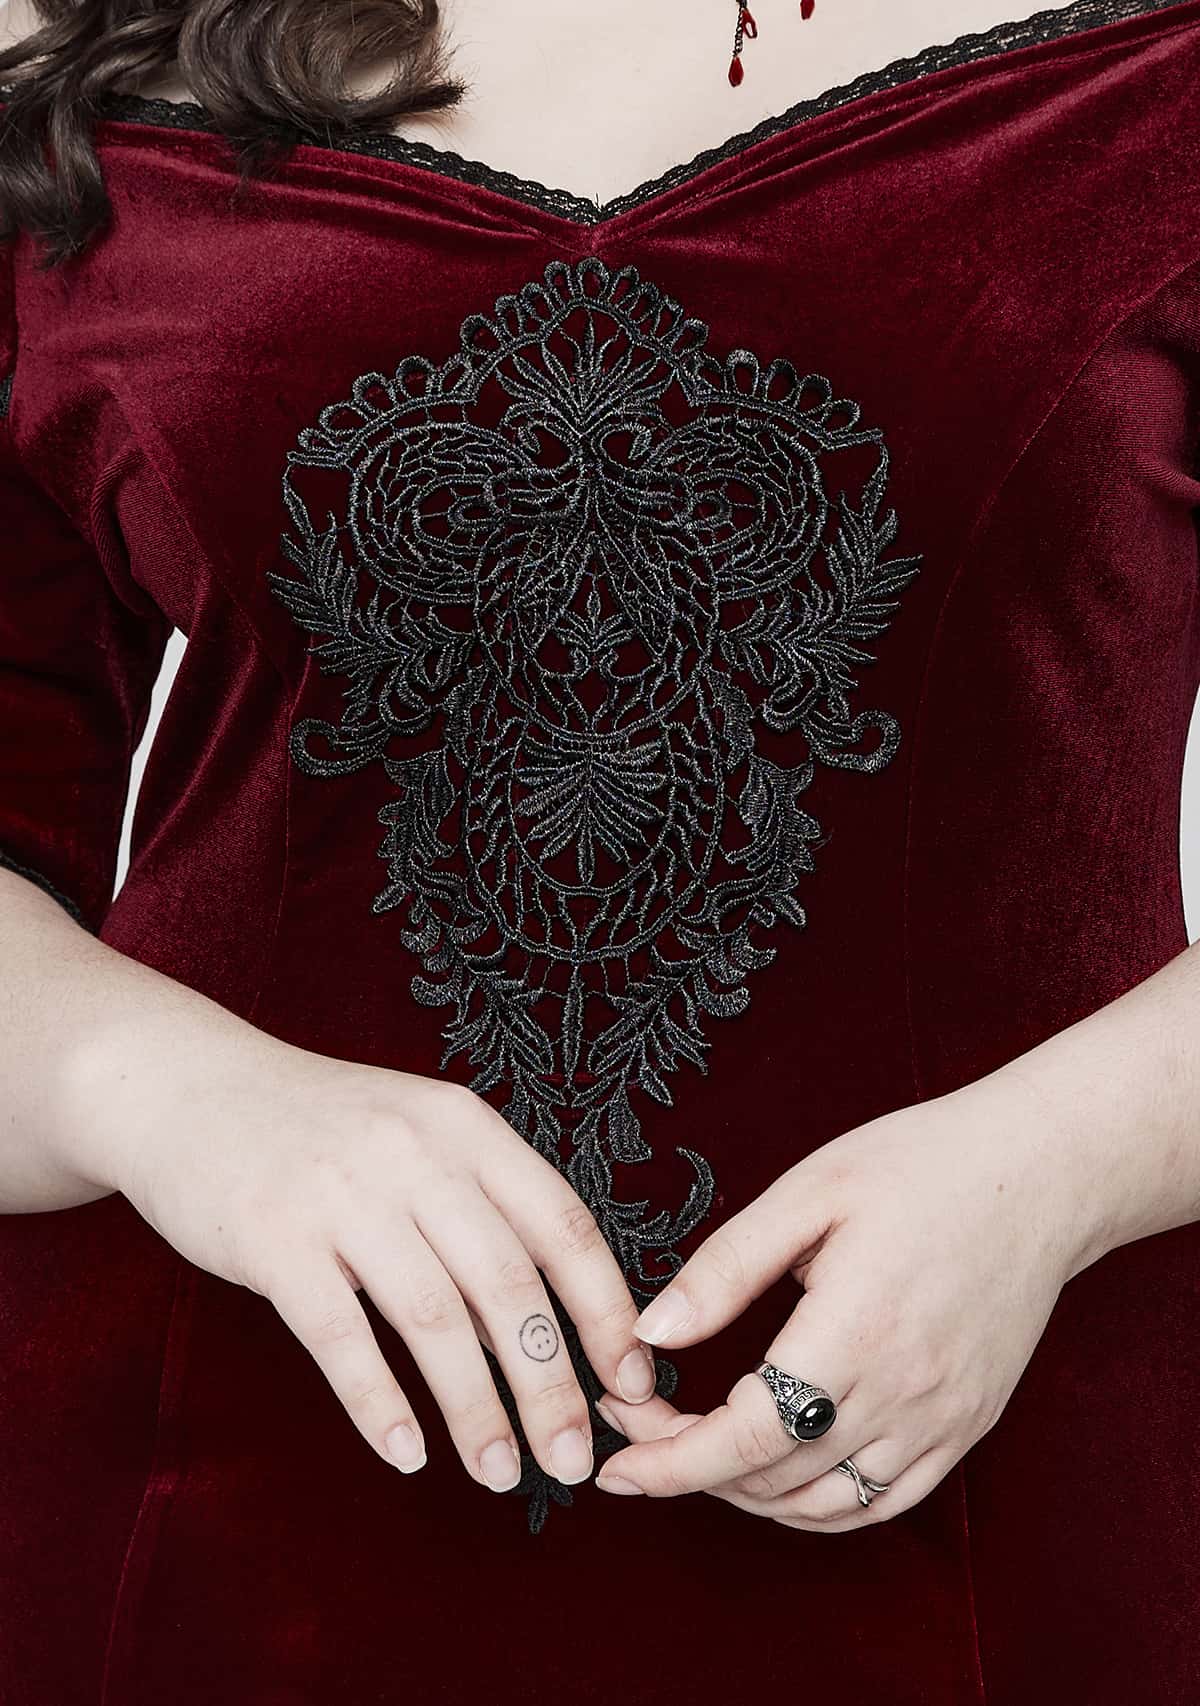 Goth Velvet Plus Size Dress